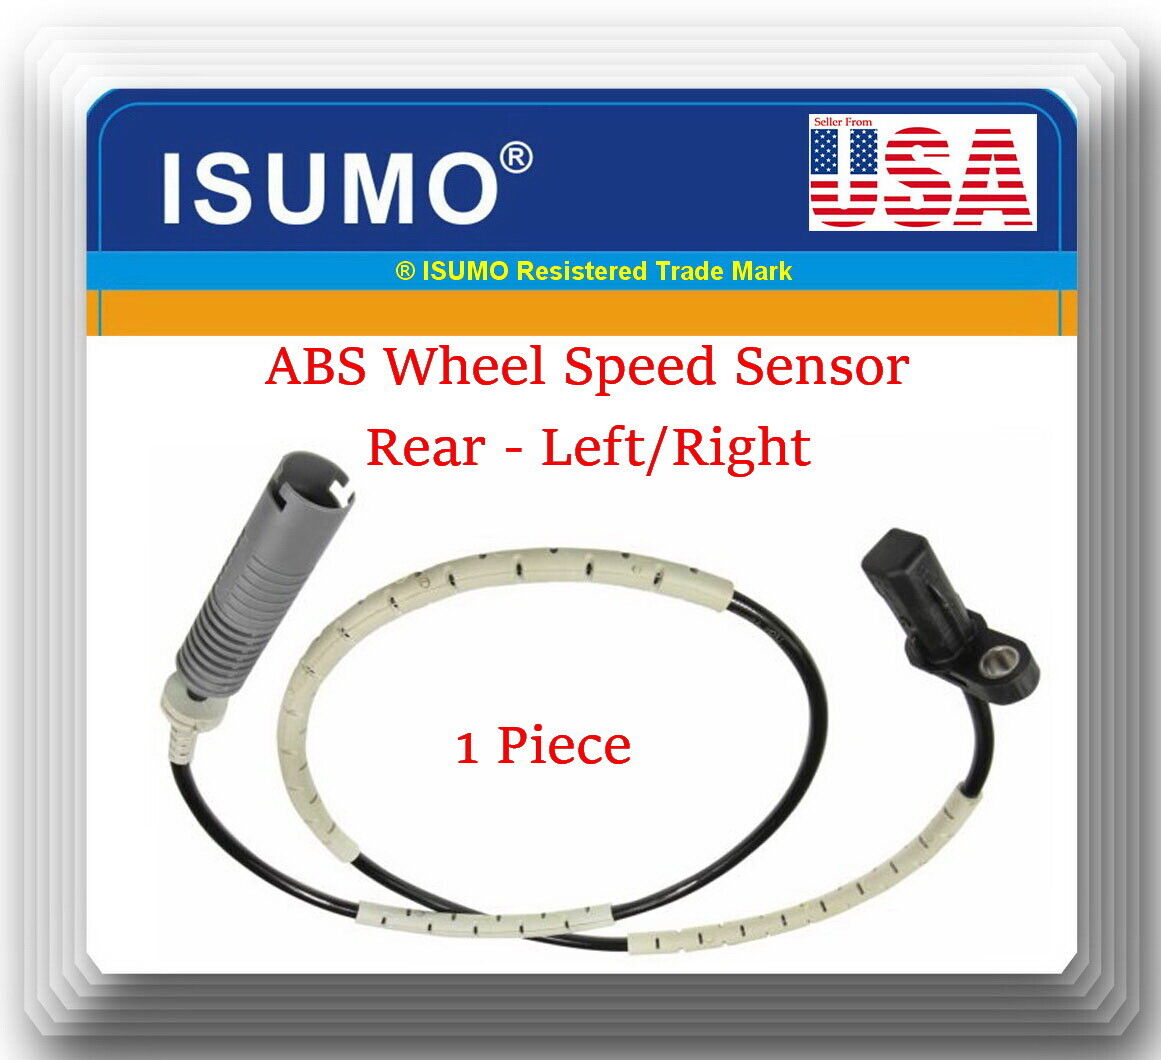 1 ABS Speed Sensor Fits: Rear Right or Left 128i 325i 328i 323i 330i 335D  E90 